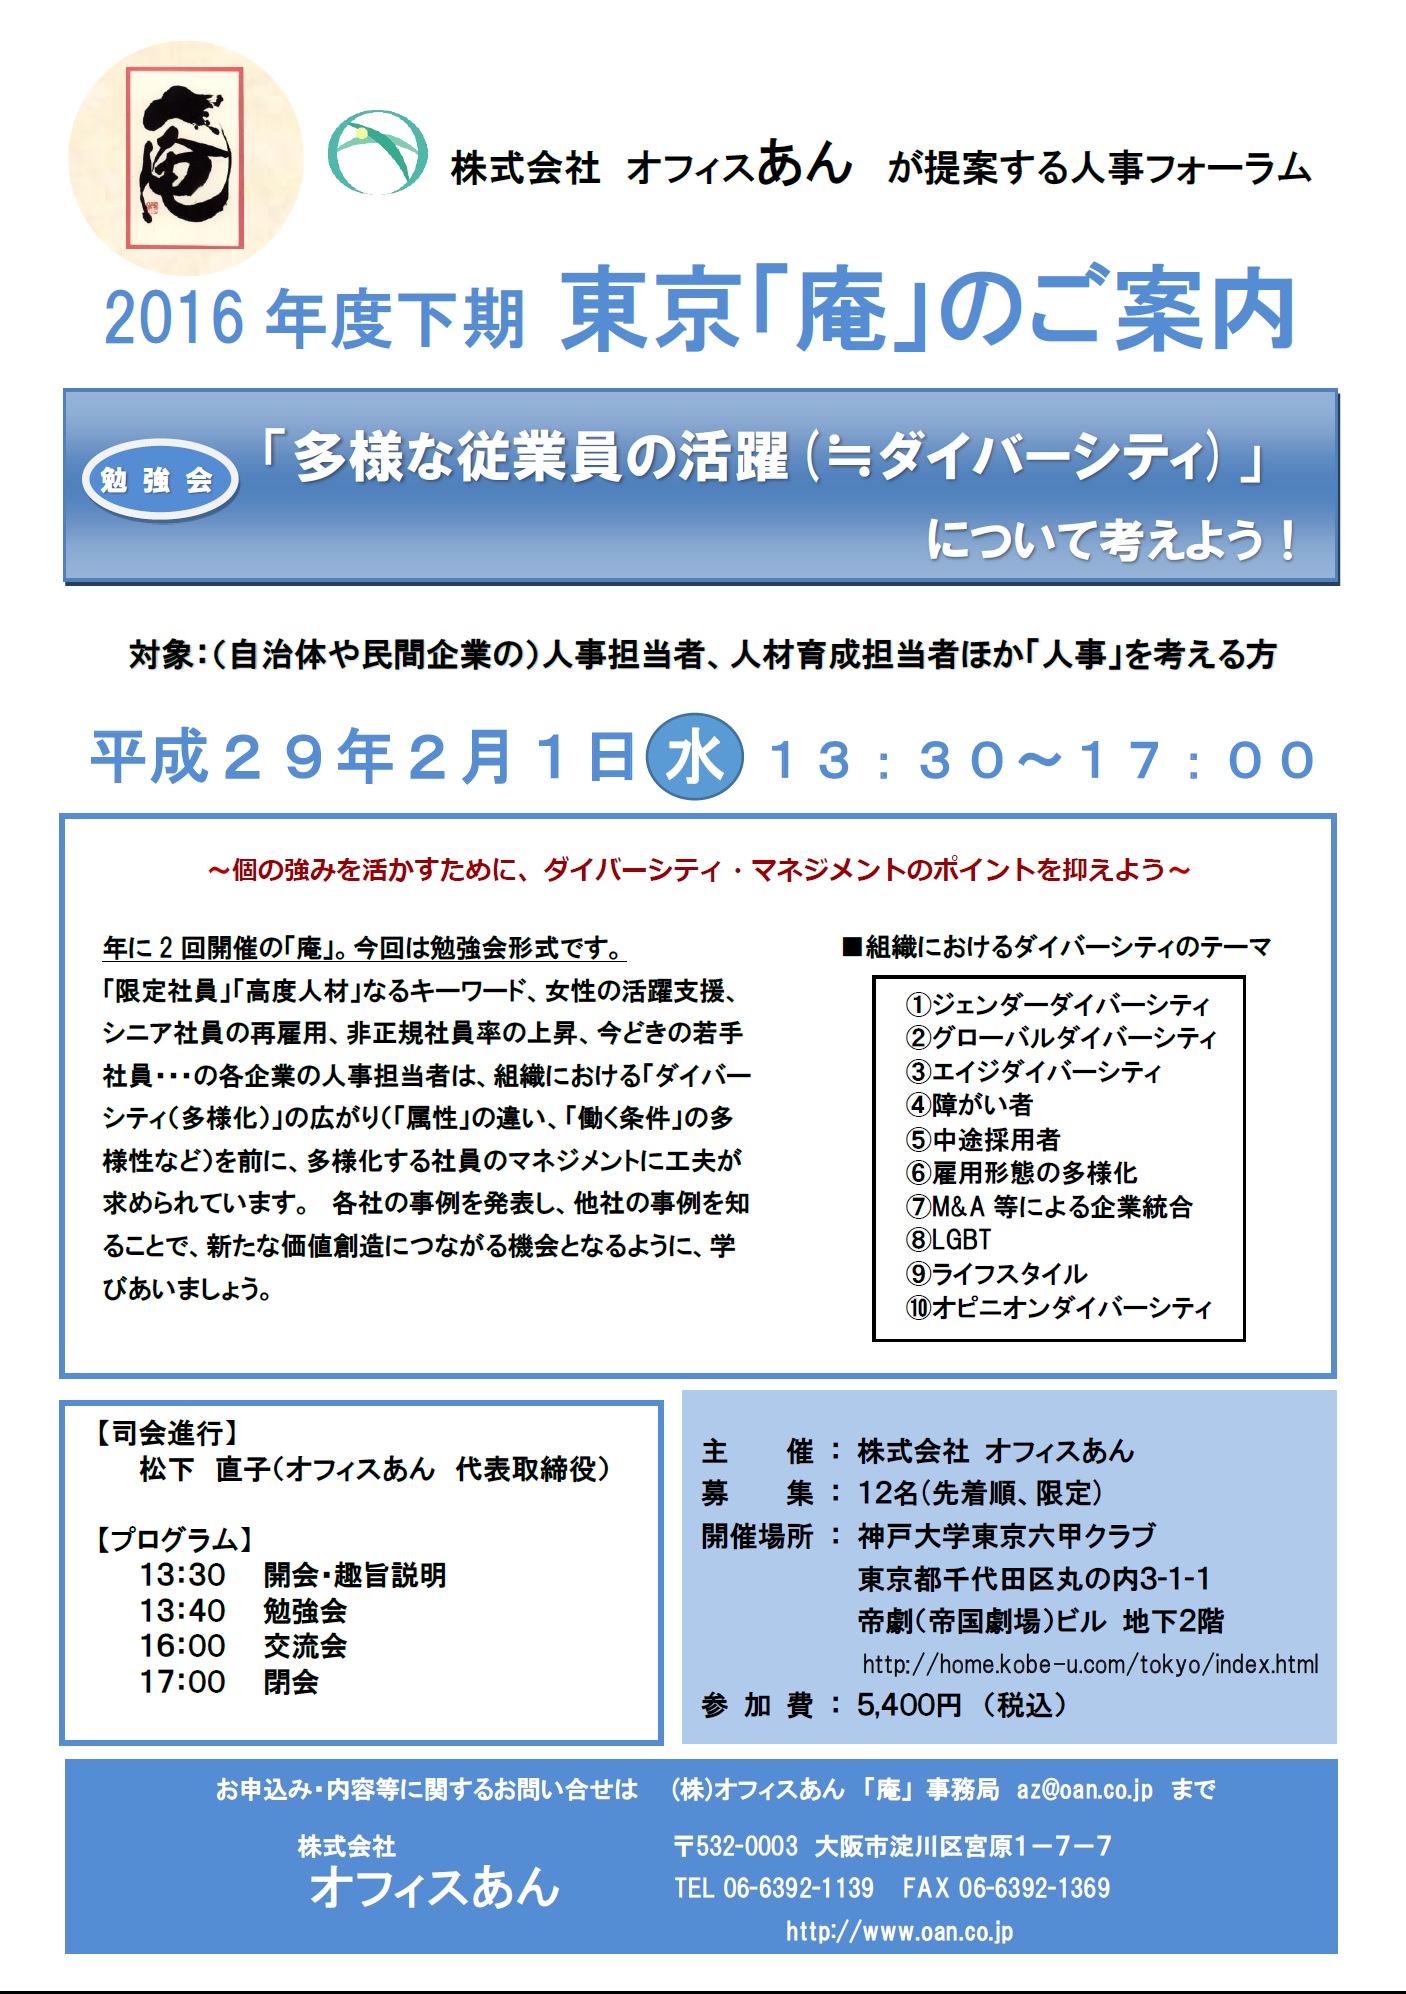 第２回2016年度 東京「庵」セミナー「多様な従業員の活躍(≒ダイバーシティ)」について考えよう！
